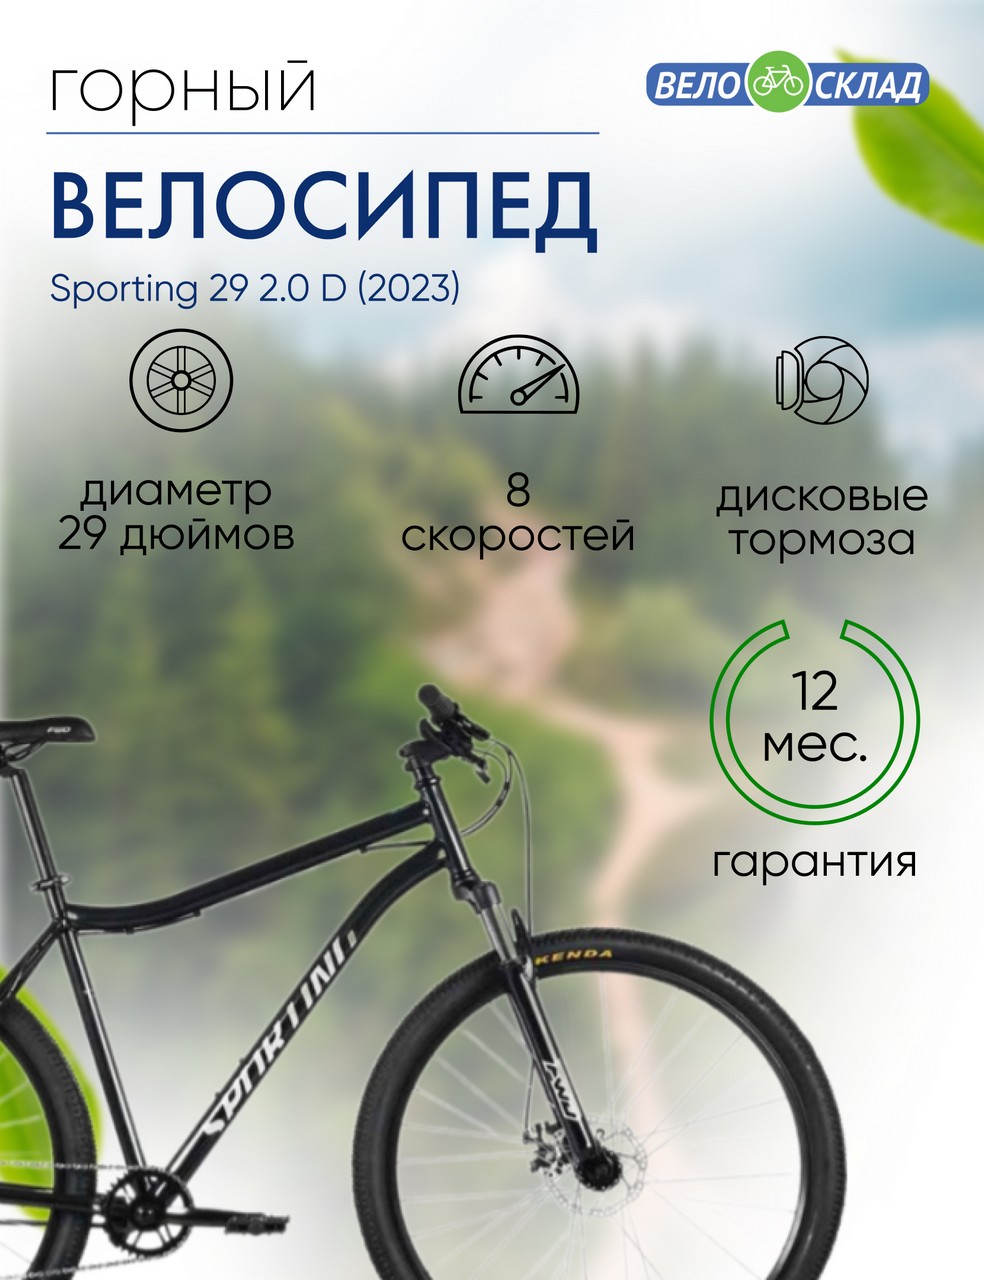 Горный велосипед Forward Sporting 29 2.0 D, год 2023, цвет Черный-Белый, ростовка 19